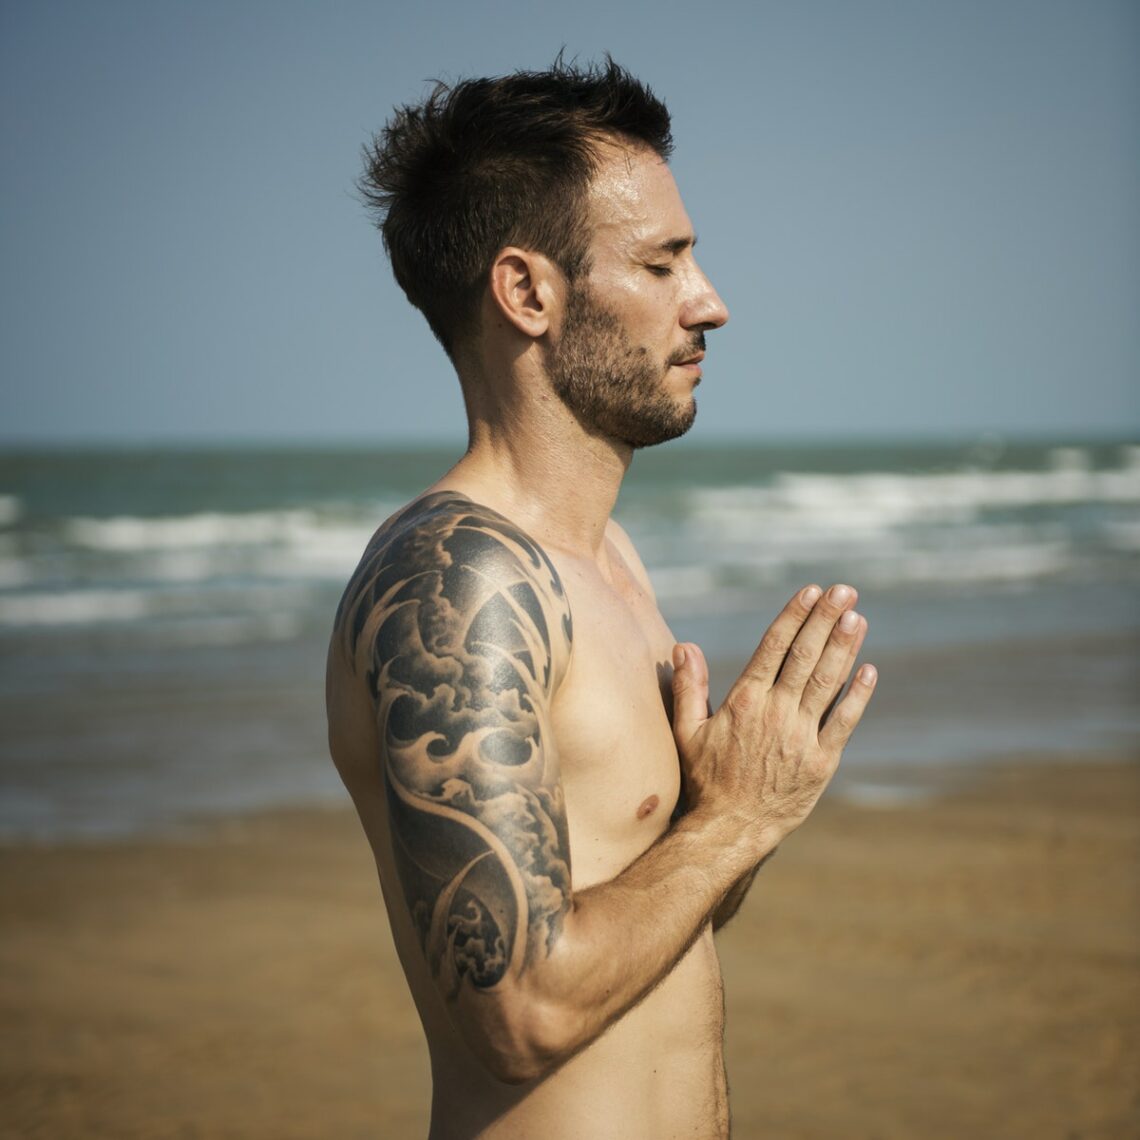 man-performing-yoga-on-beach-jaywalker